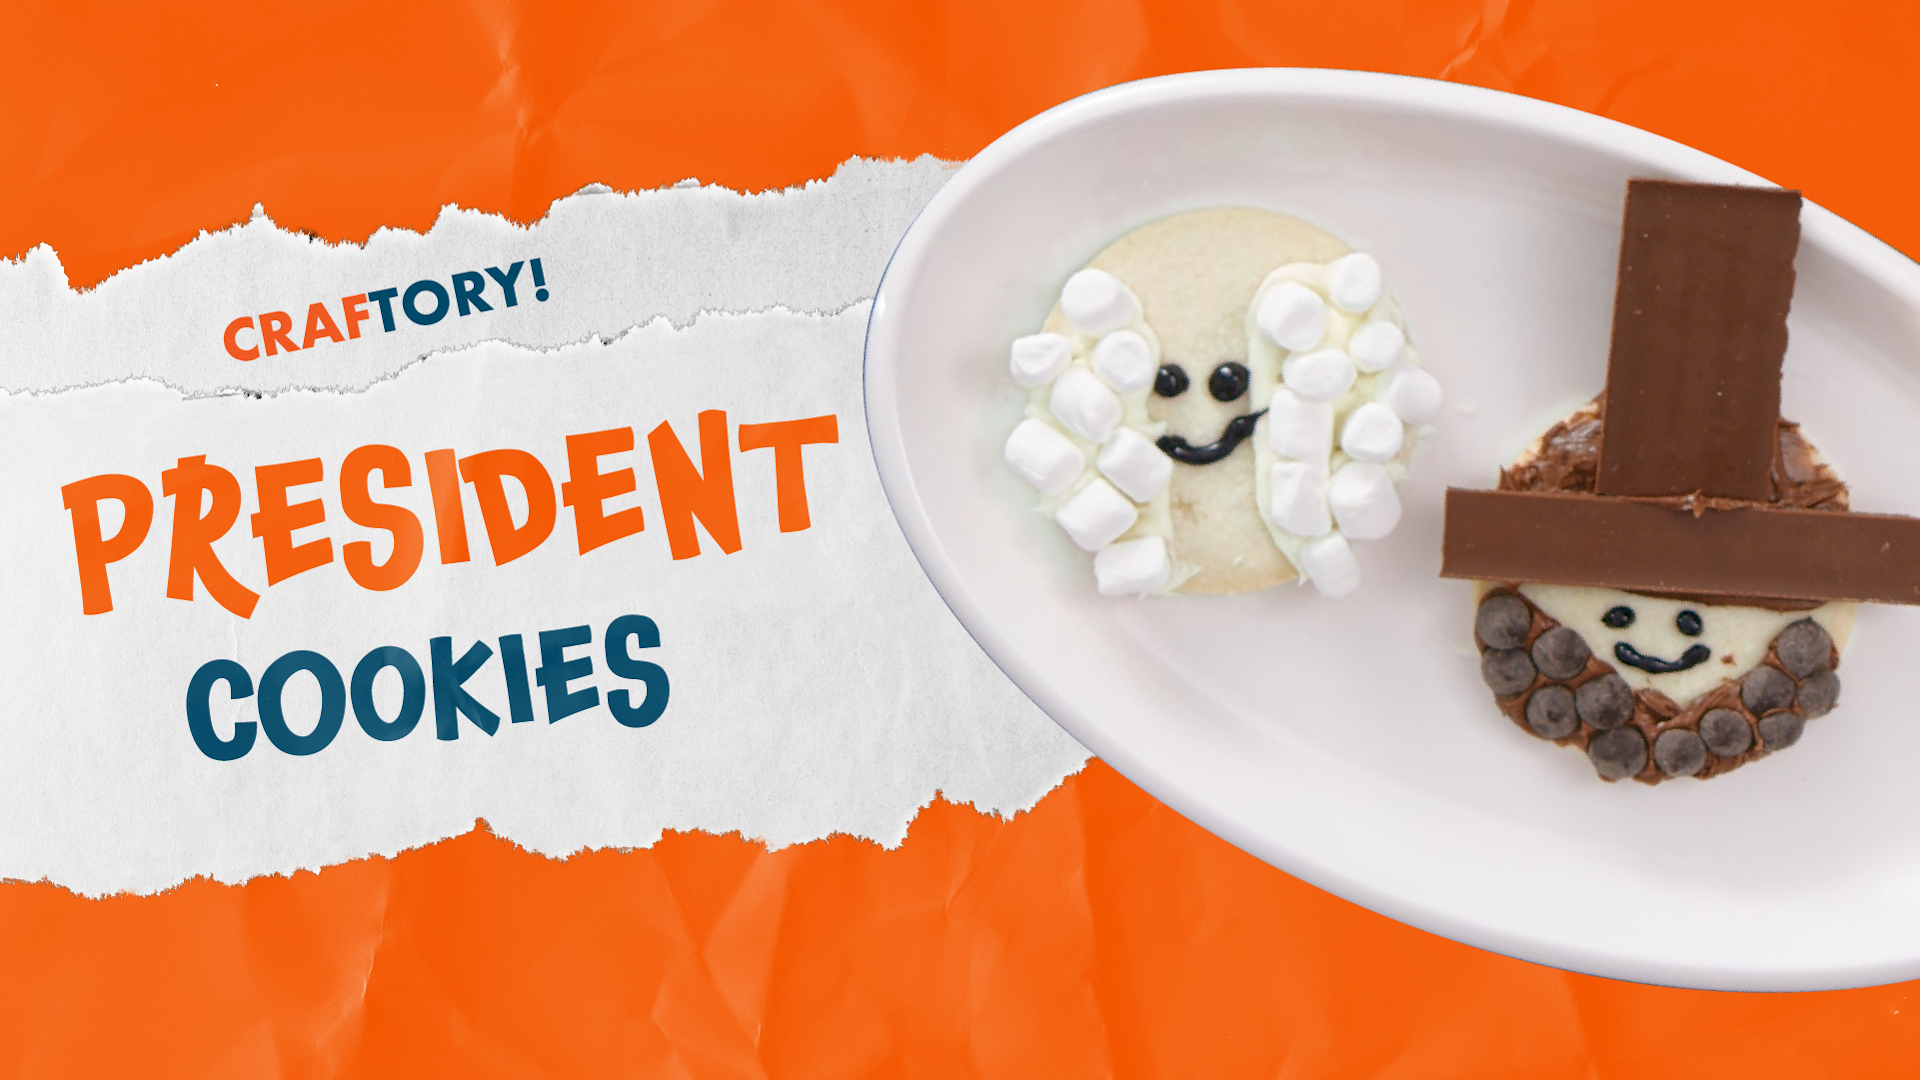 Craftory: President Cookies